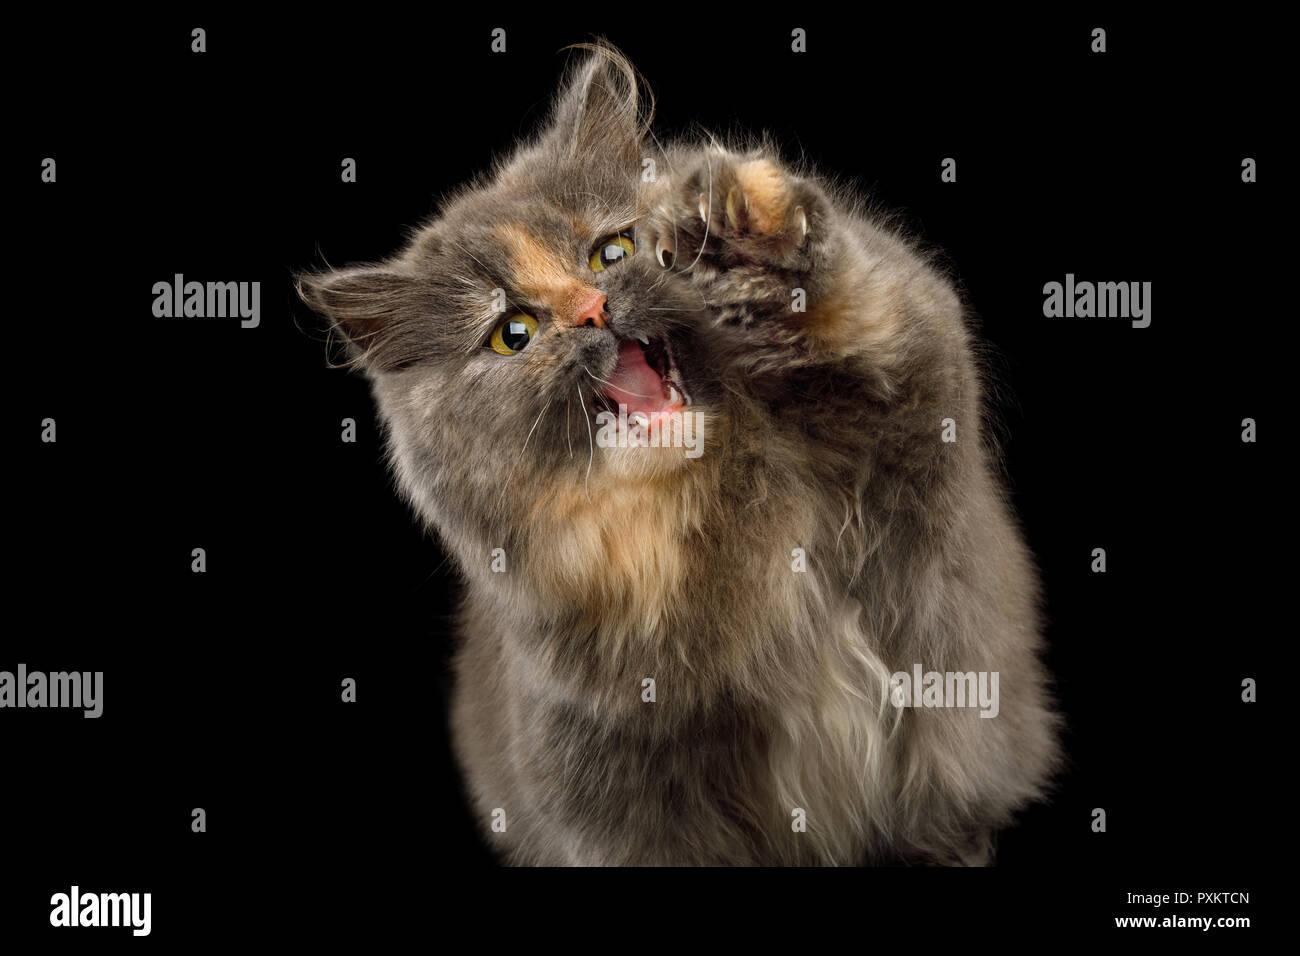 Verspielte kurze Munchkin Cat Schildkröte Pelze, Jagd auf Isolierte schwarze Hintergrund, die Pfote und wollen, fangen Sie mit geöffnetem Mund Stockfoto